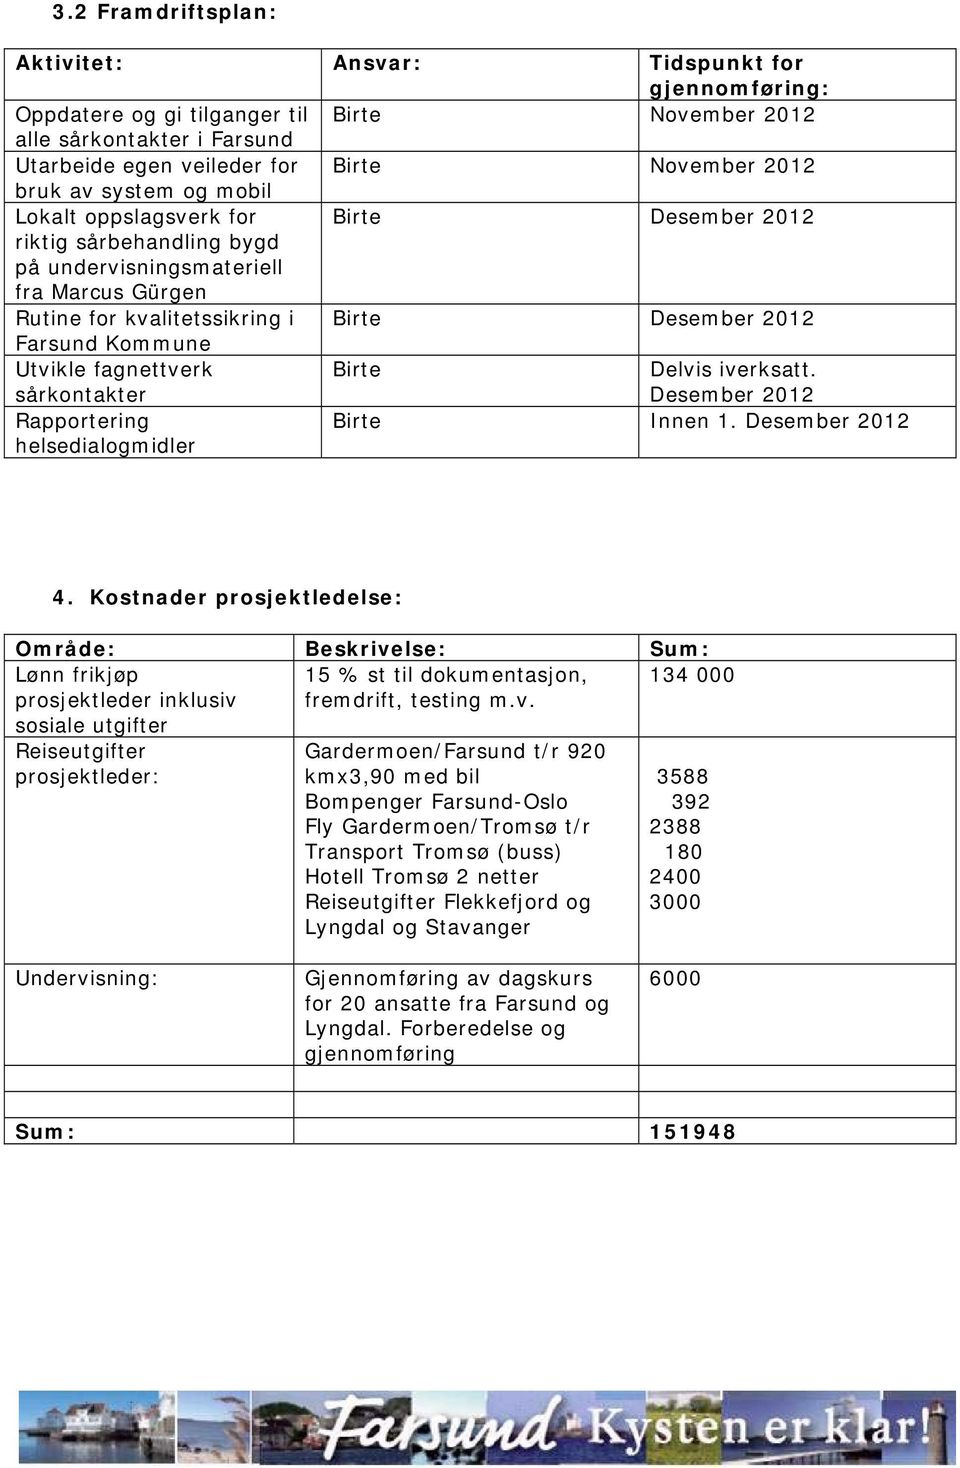 Utvikle fagnettverk sårkontakter Birte Delvis iverksatt. Desember 2012 Rapportering helsedialogmidler Birte Innen 1. Desember 2012 4.